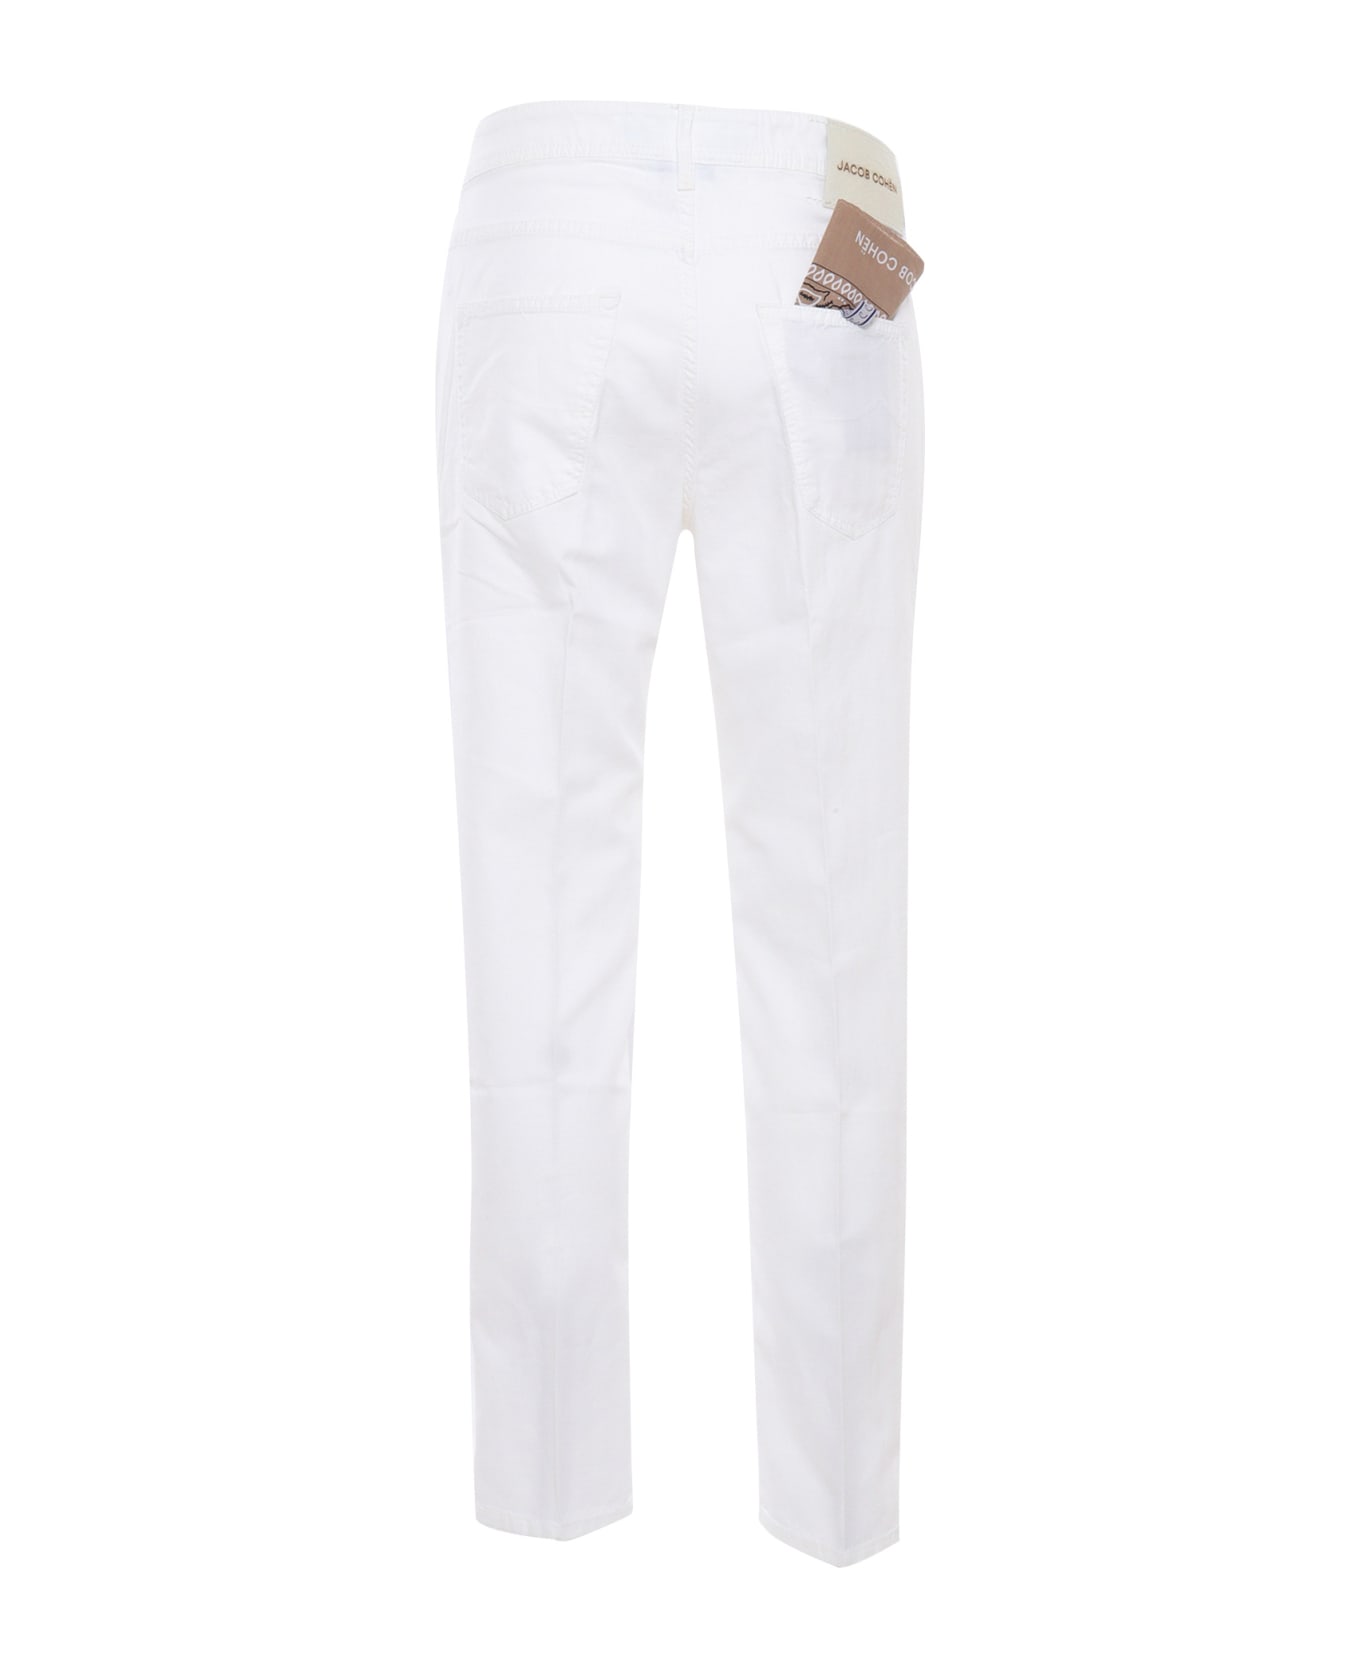 Jacob Cohen White Trousers - WHITE